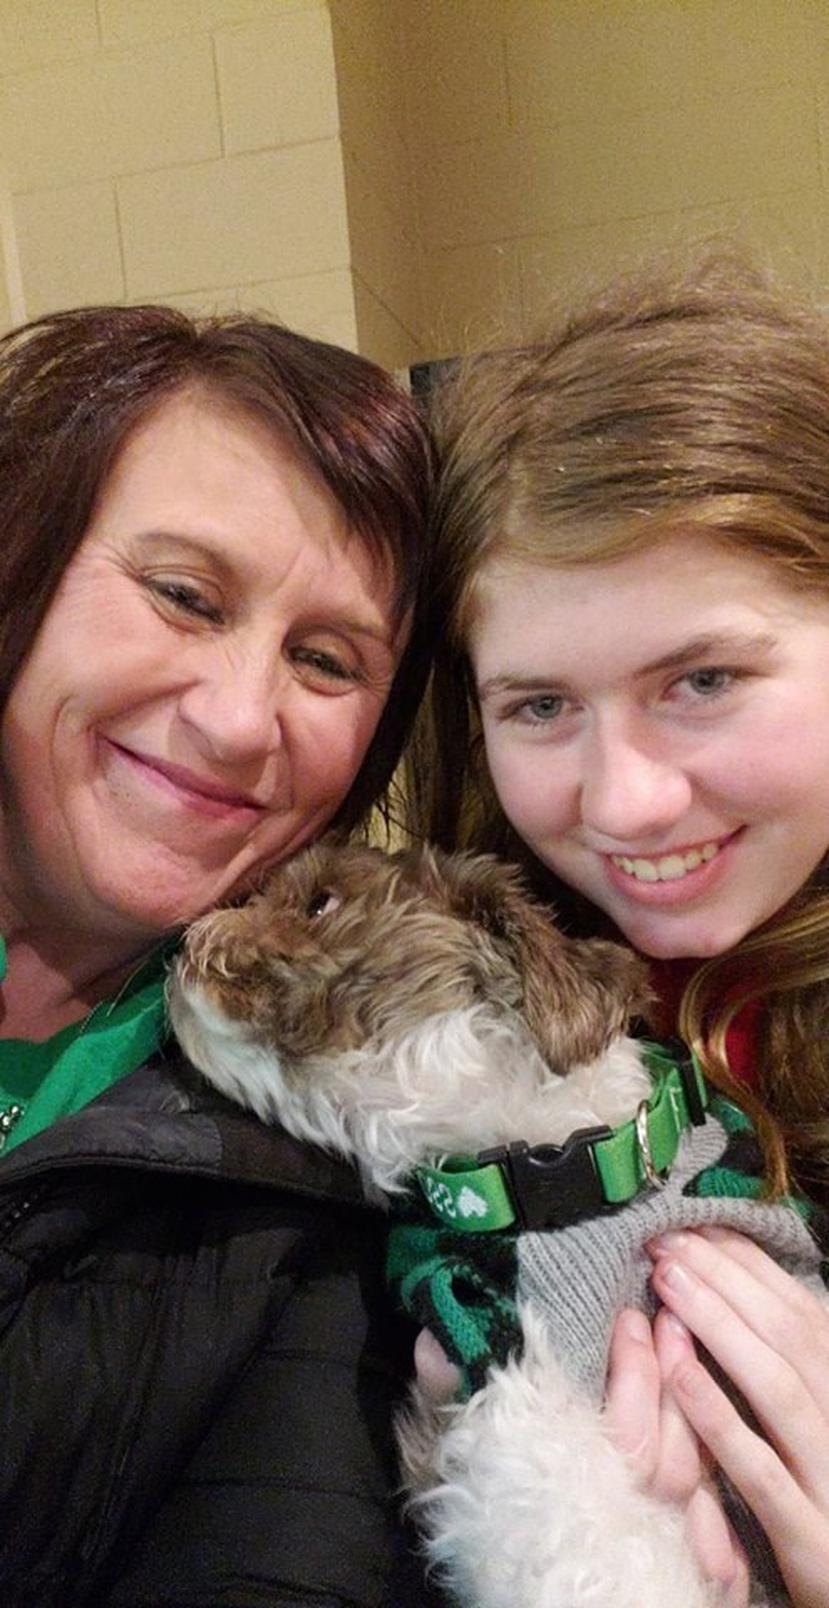 Esta foto del viernes 11 de enero del 2019 muestra a Jayme Closs, derecha, al lado de su tía, Jennifer Smith, en Barron, Wisconsin. (AP)